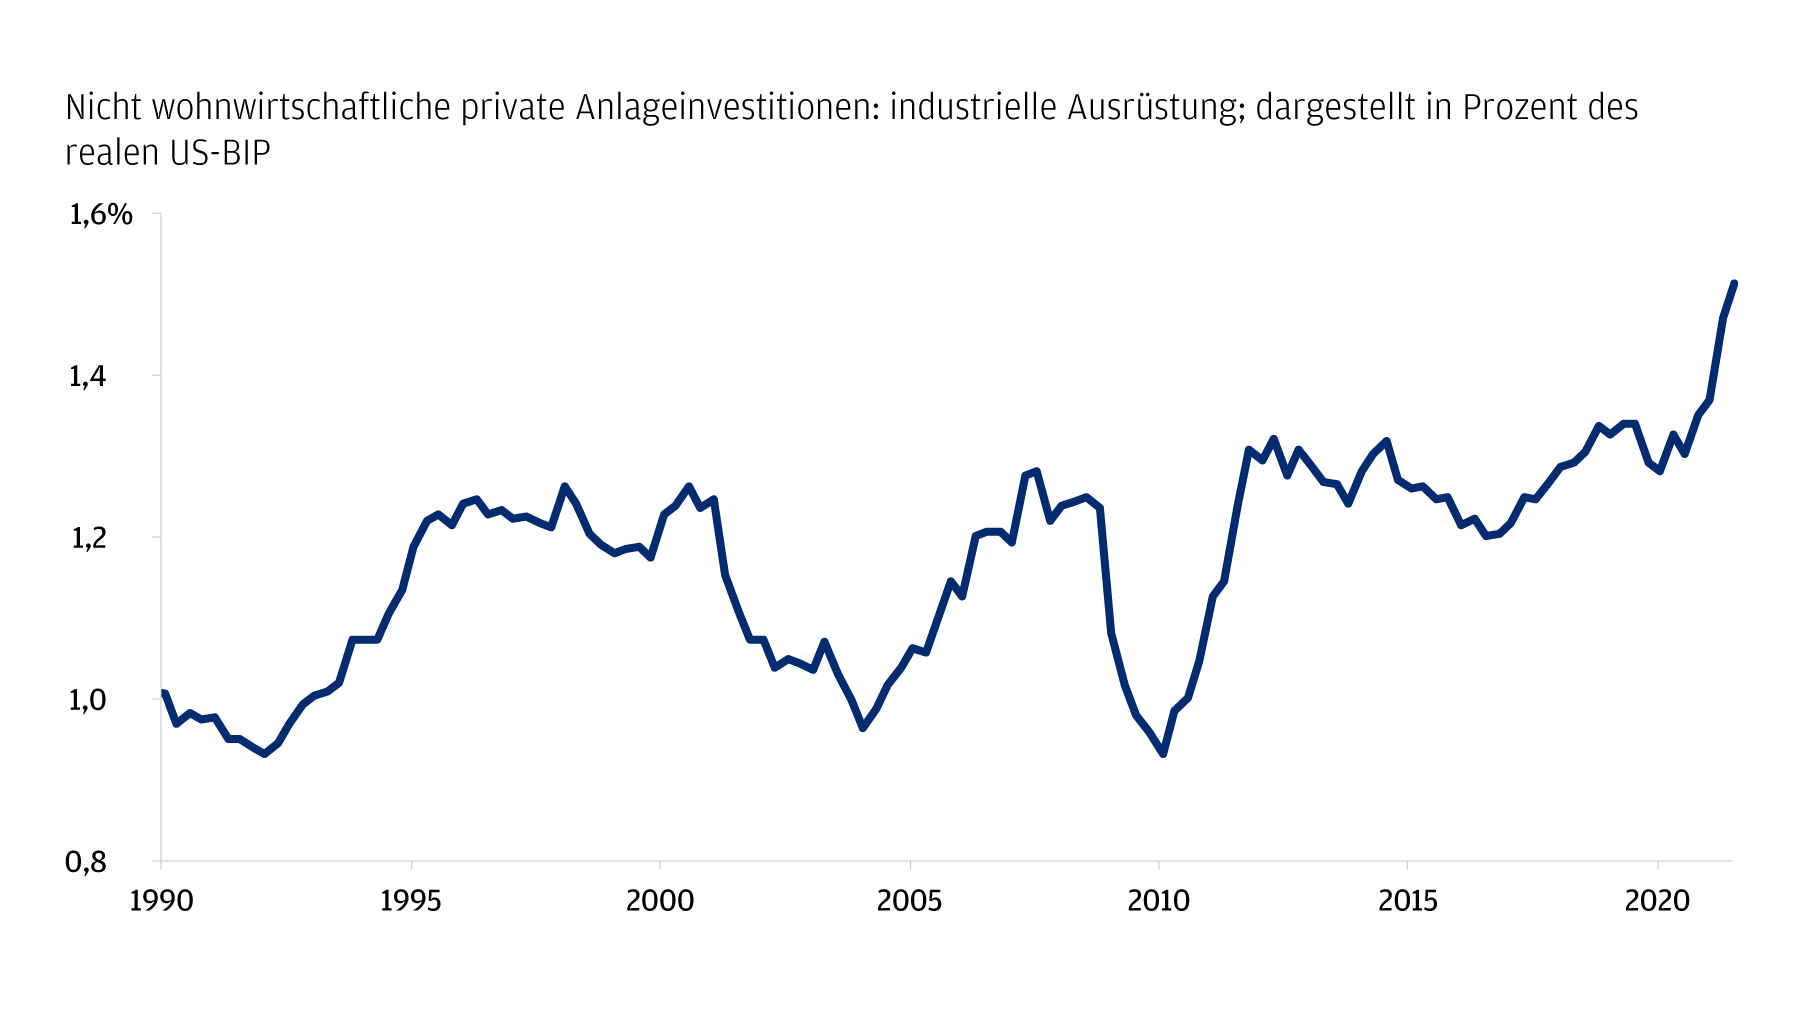 Diese Grafik zeigt die US-Investitionen, die auf nicht wohnwirtschaftliche private Anlageinvestitionen in industrielle Ausrüstung entfallen. Der Datensatz ist in Prozent  des realen US-BIP von 1990 bis Juli 2021 dargestellt. Anfang 1990 machten die privaten  US-Anlageinvestitionen in Industrieanlagen, die nicht für Wohnzwecke bestimmt waren, etwa 1,0 % des realen BIP aus. Dieser Wert blieb bis Mitte der 1990er Jahre nahe bei 1,0 %, stieg dann auf 1,2 % und sank bis 2004 wieder auf 1,0 %. Bis 2020 verharrte der Wert in einer Spanne von 1,0 % bis 1,3 %. Danach stieg er auf einen Höchststand von 1,51 %, wie aus den neuesten Daten vom Juli 2021 hervorgeht.